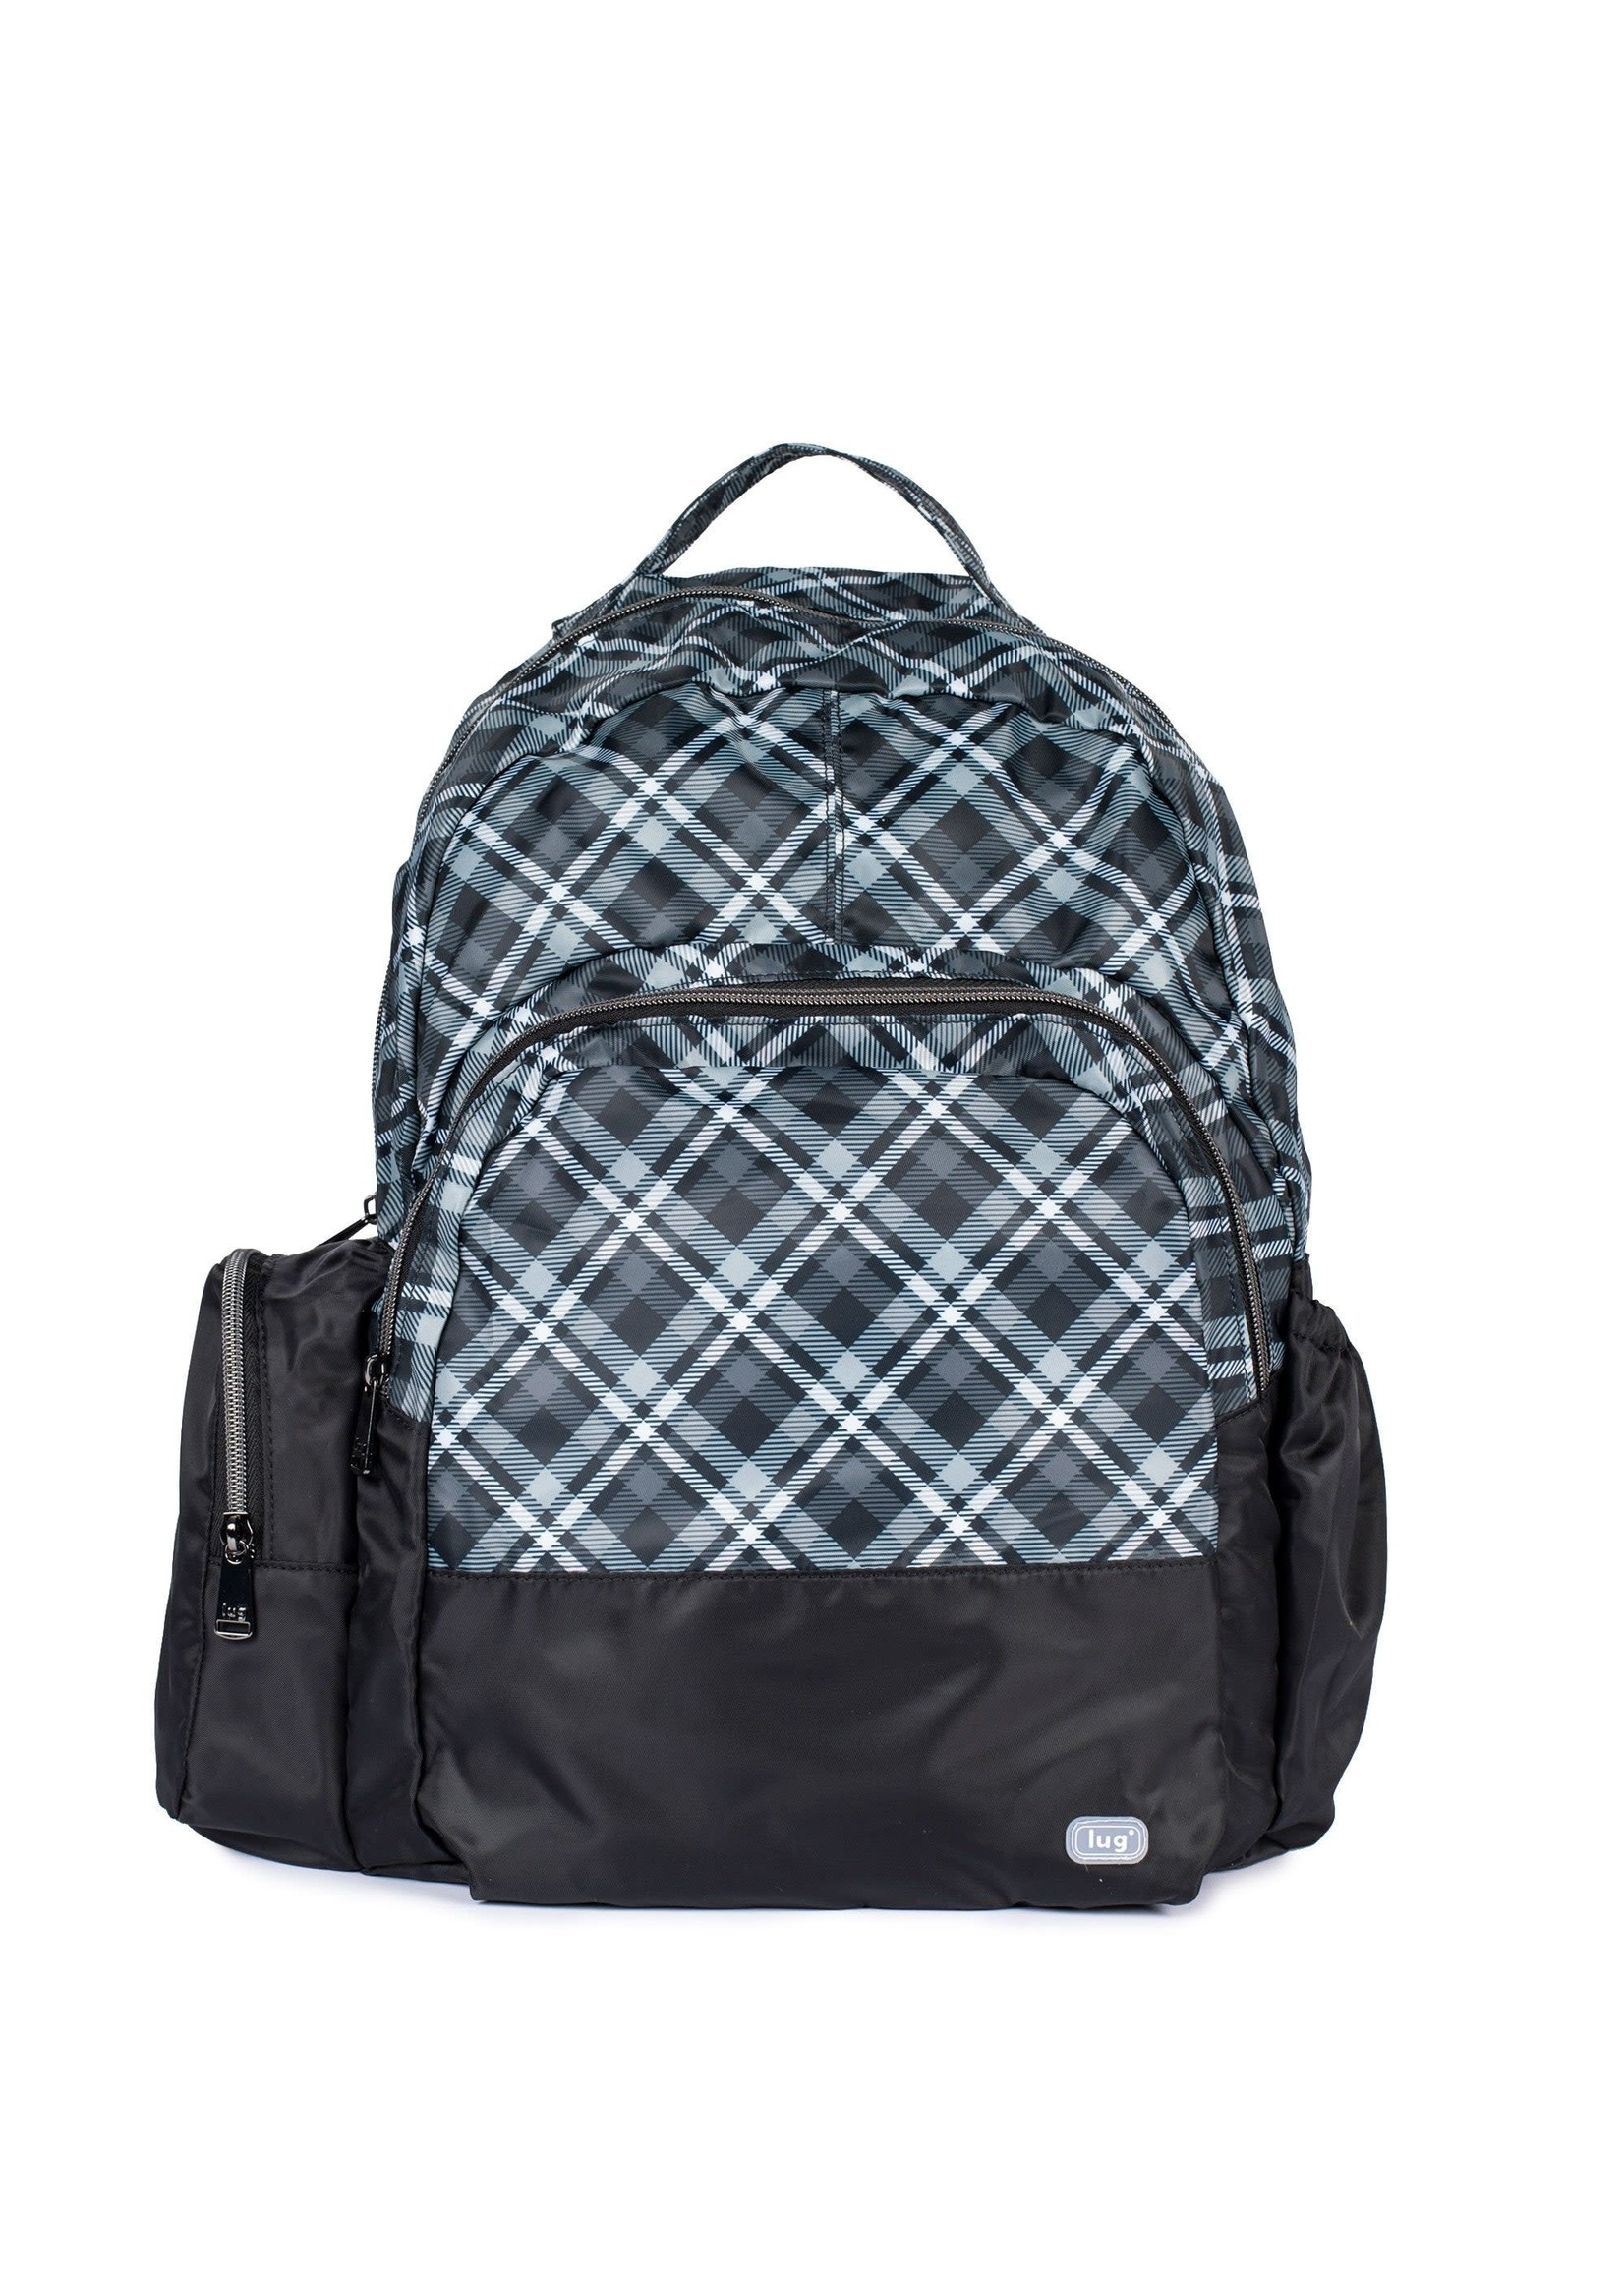 Lug Echo Packable Backpack